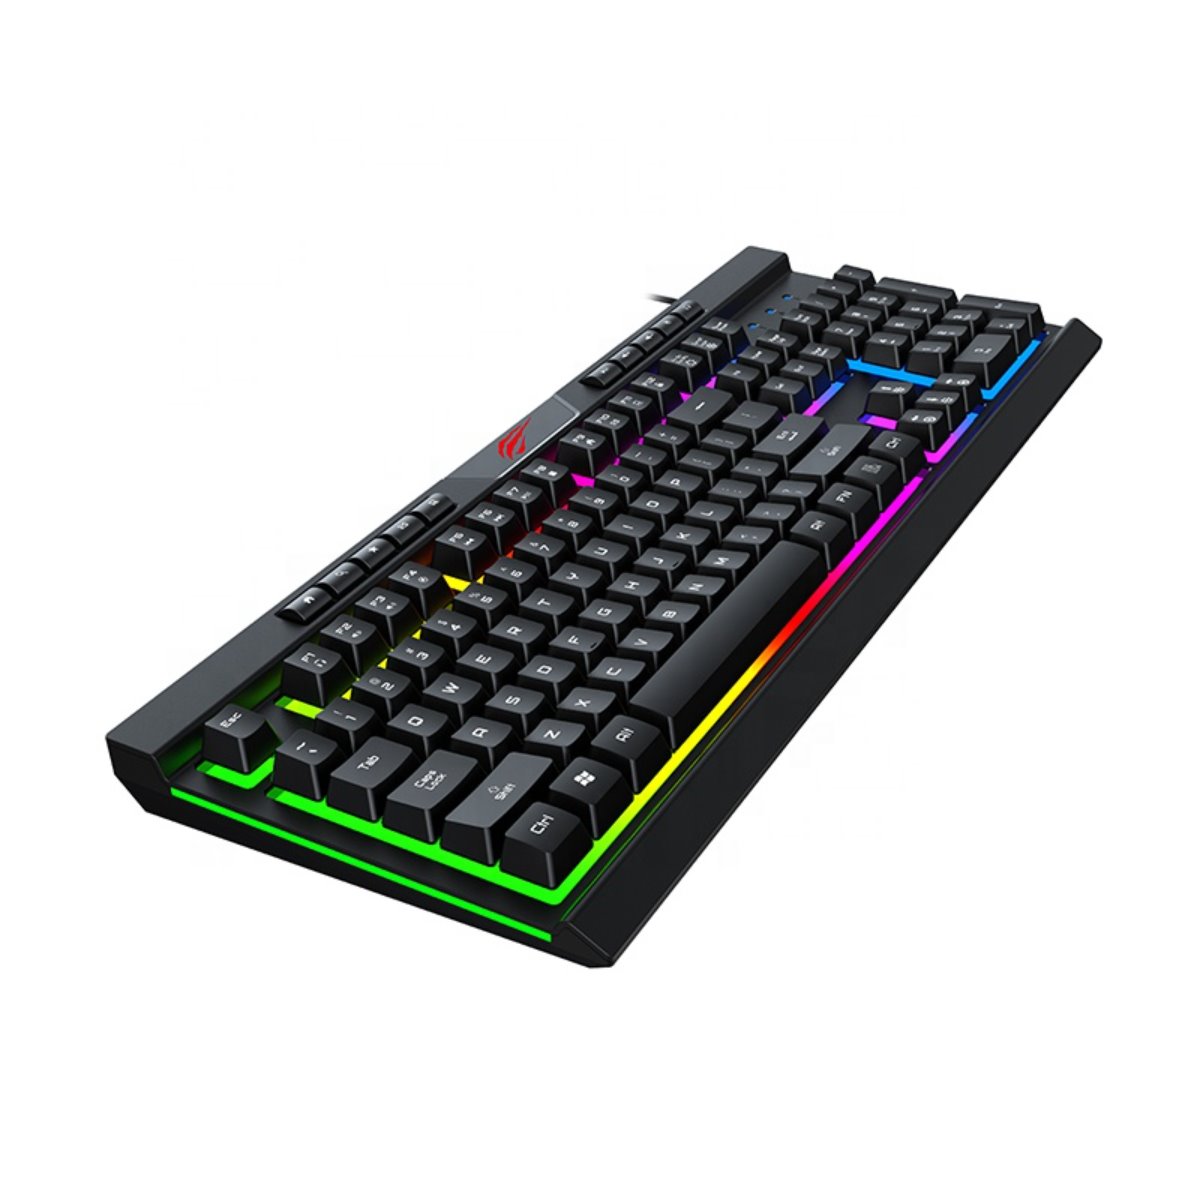 Pack para realizar el cambio del teclado en portátiles, desde 79€